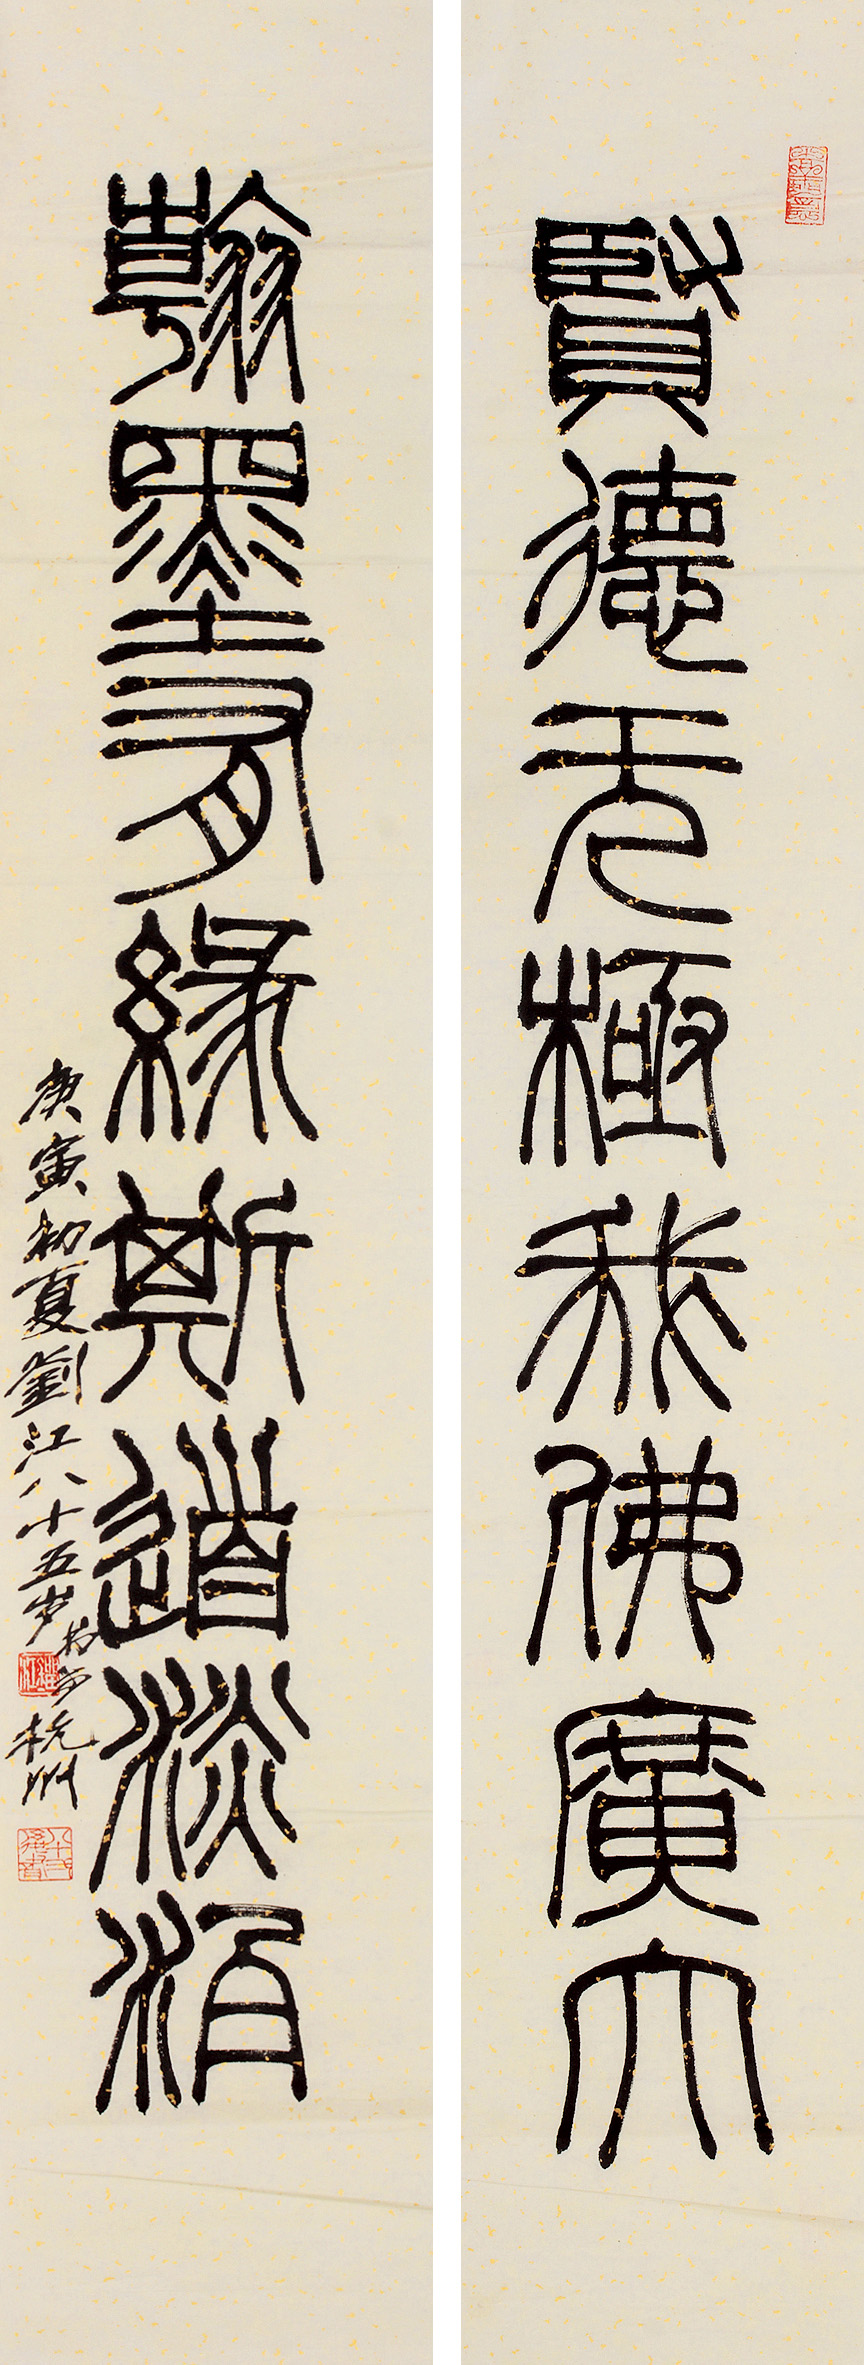 刘江(b1926) 庚寅682010年作 篆书八言联 立轴 水墨纸本